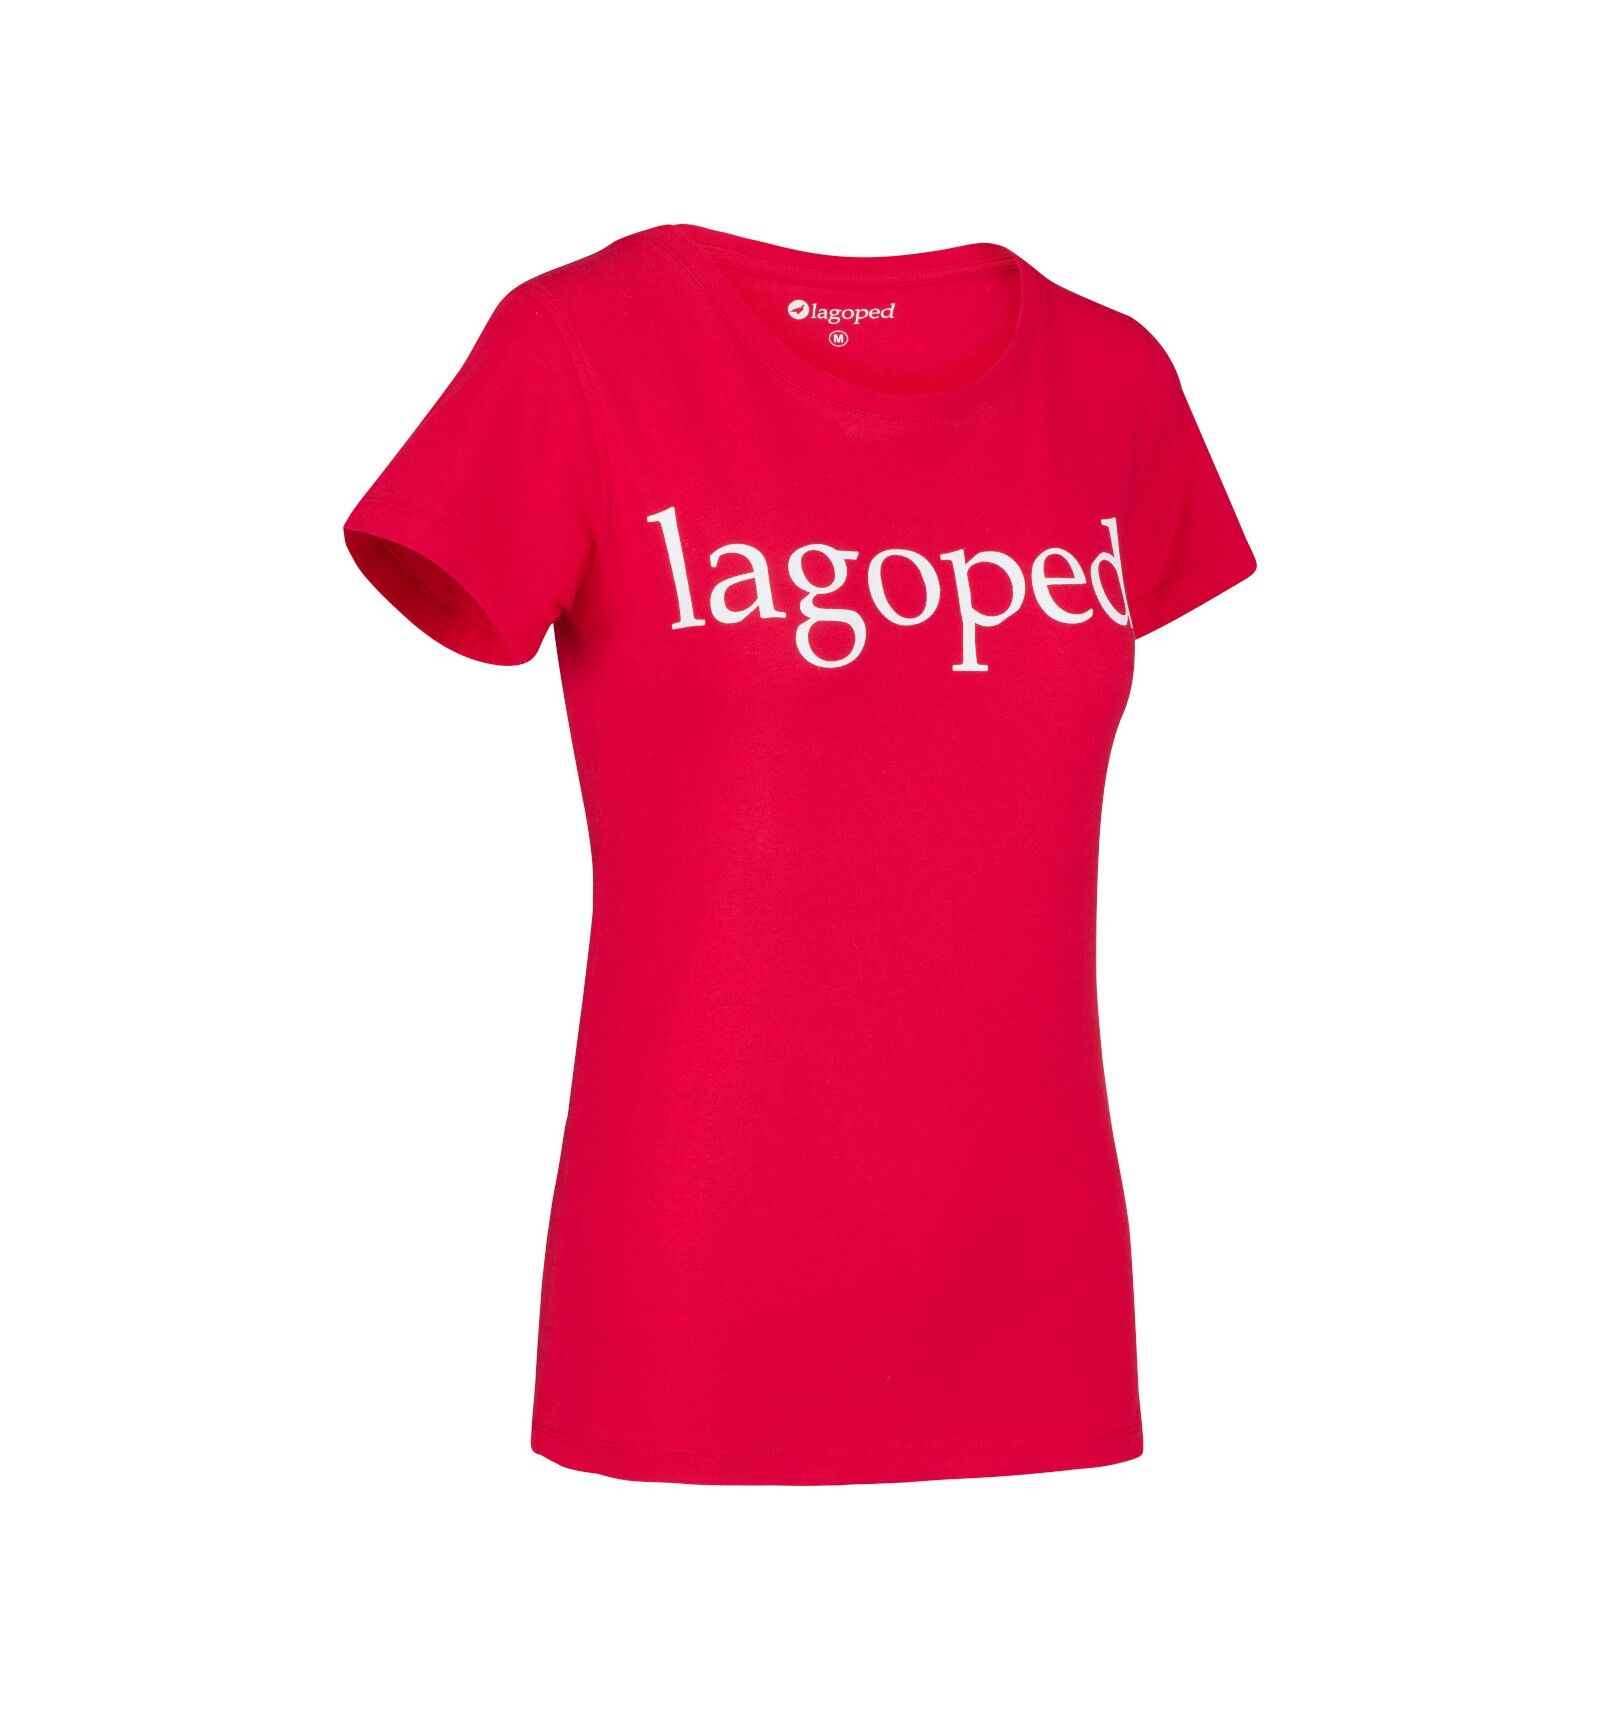 Lagoped Gotee - T-shirt - Women's